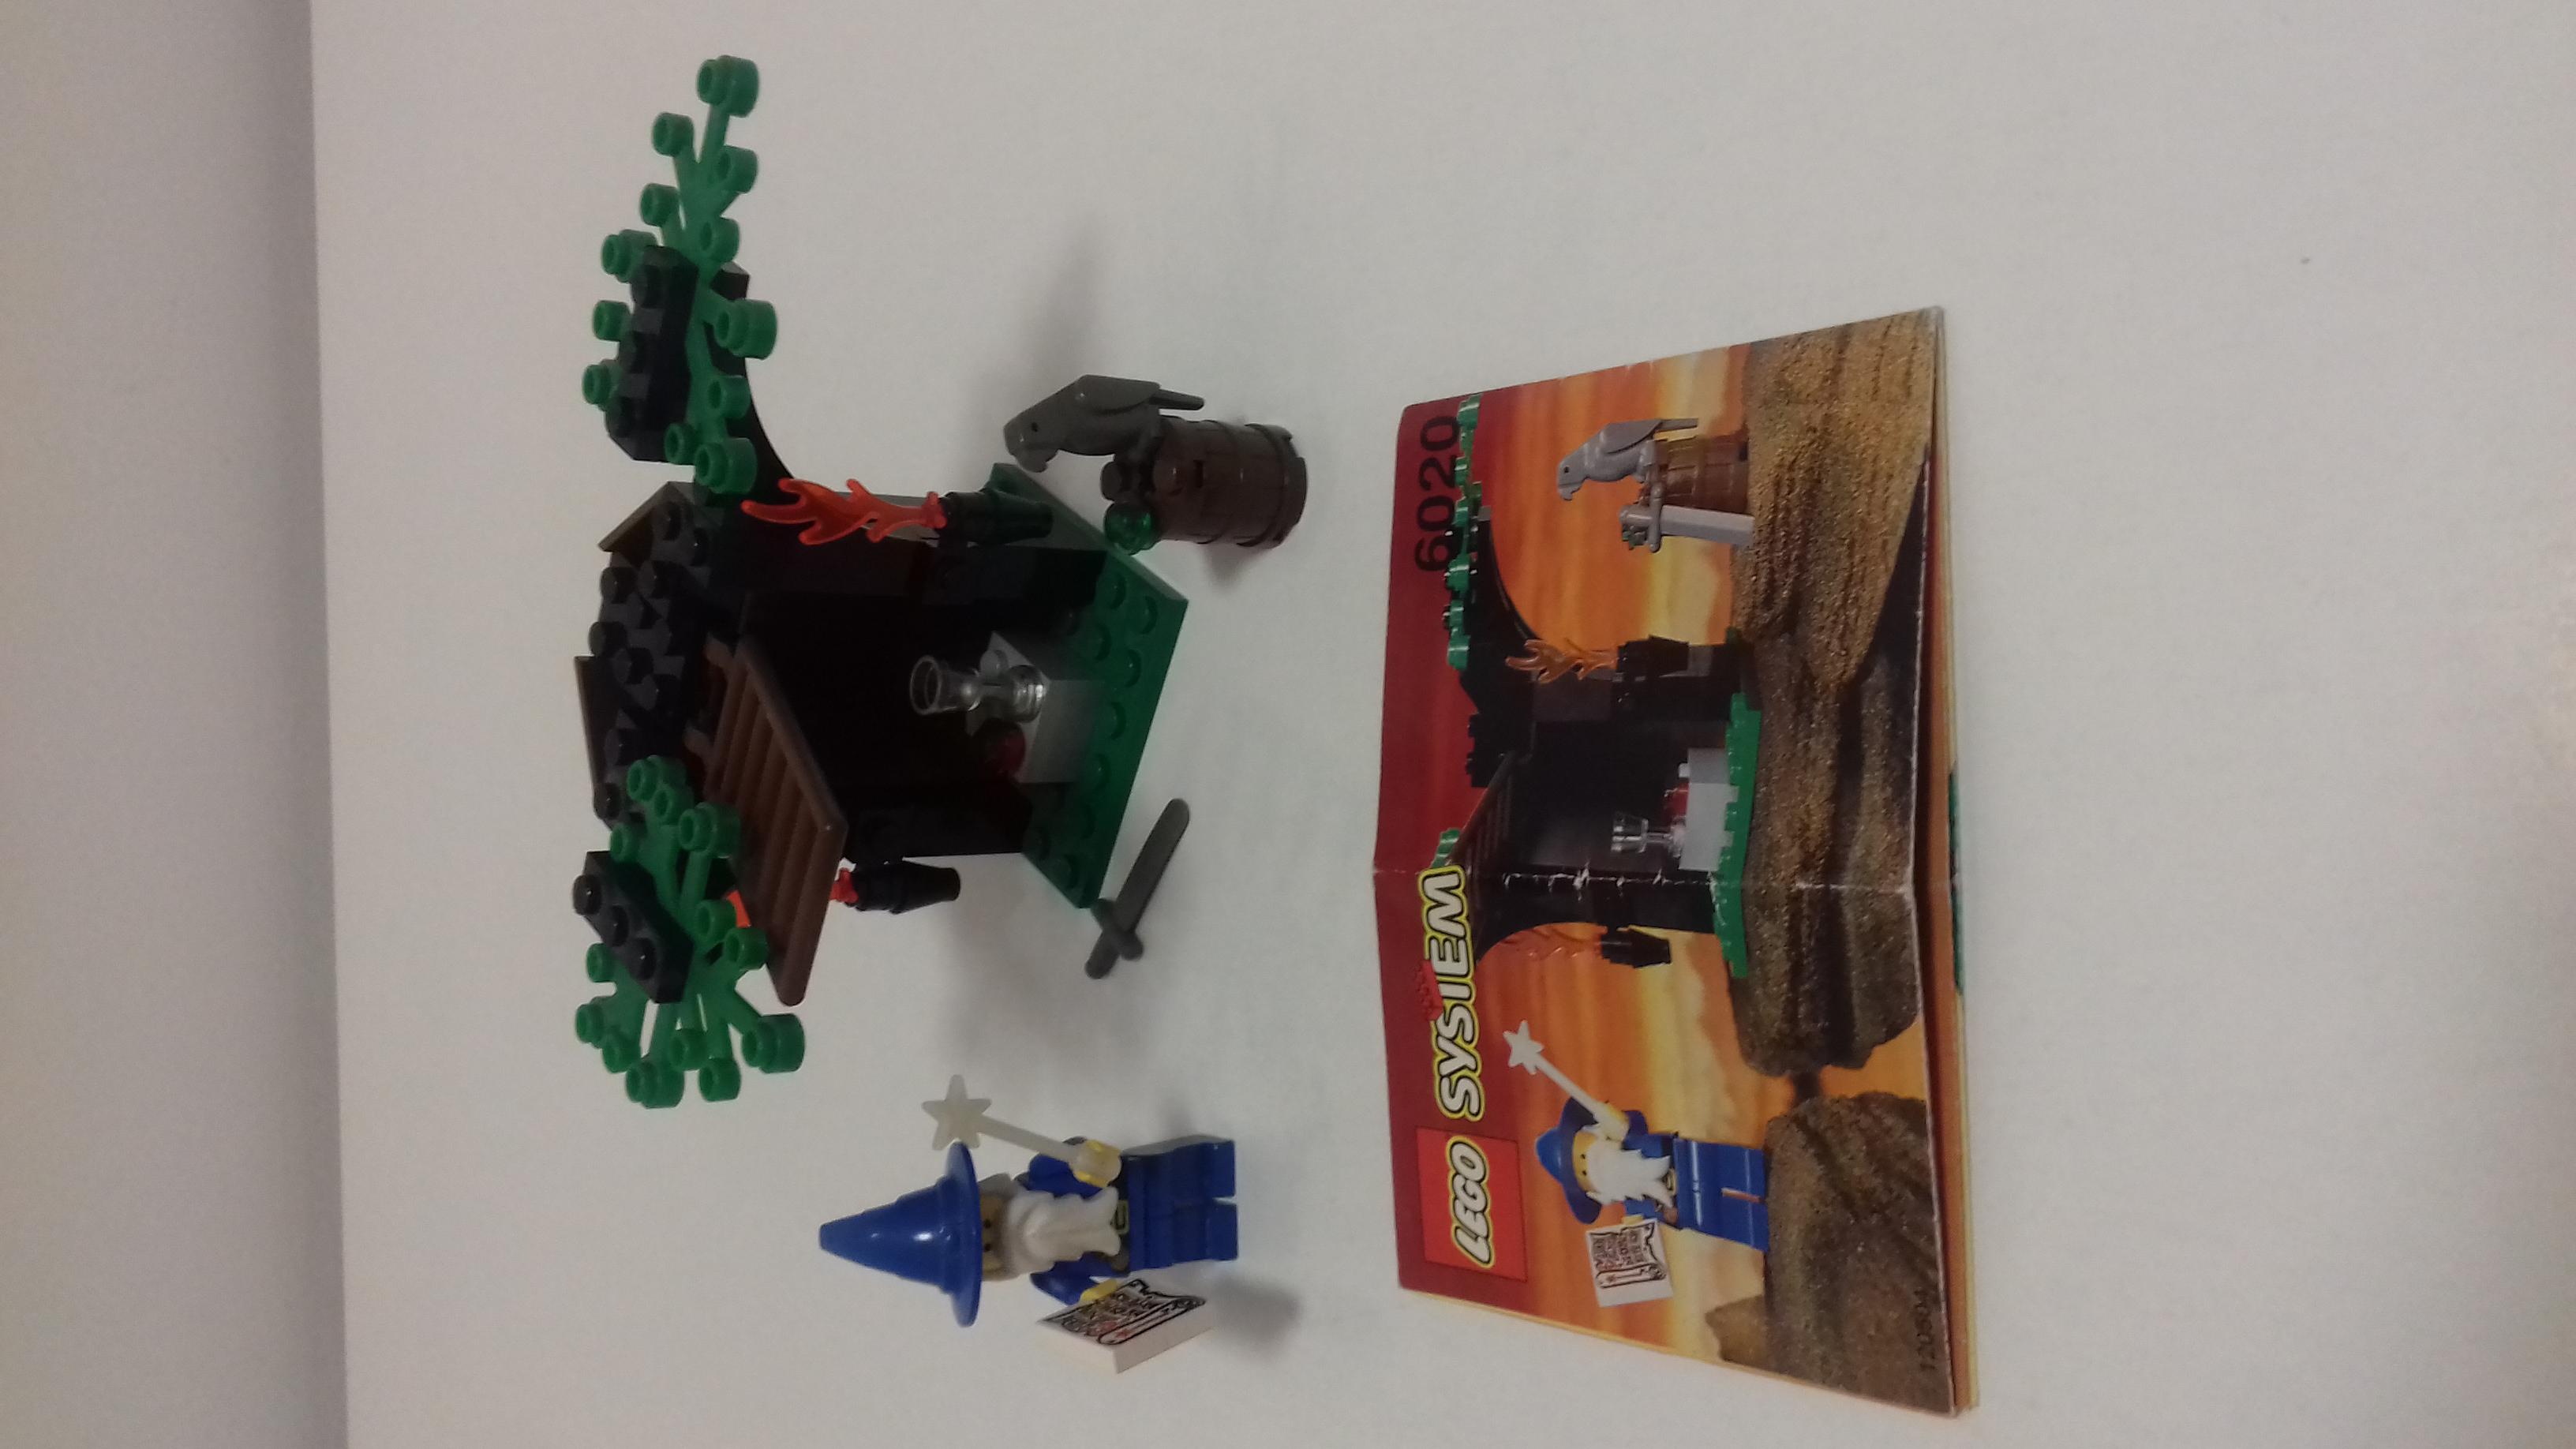 Klocki Lego Castle6020 - Sekretne laboratorium Wizarda, sprzedam